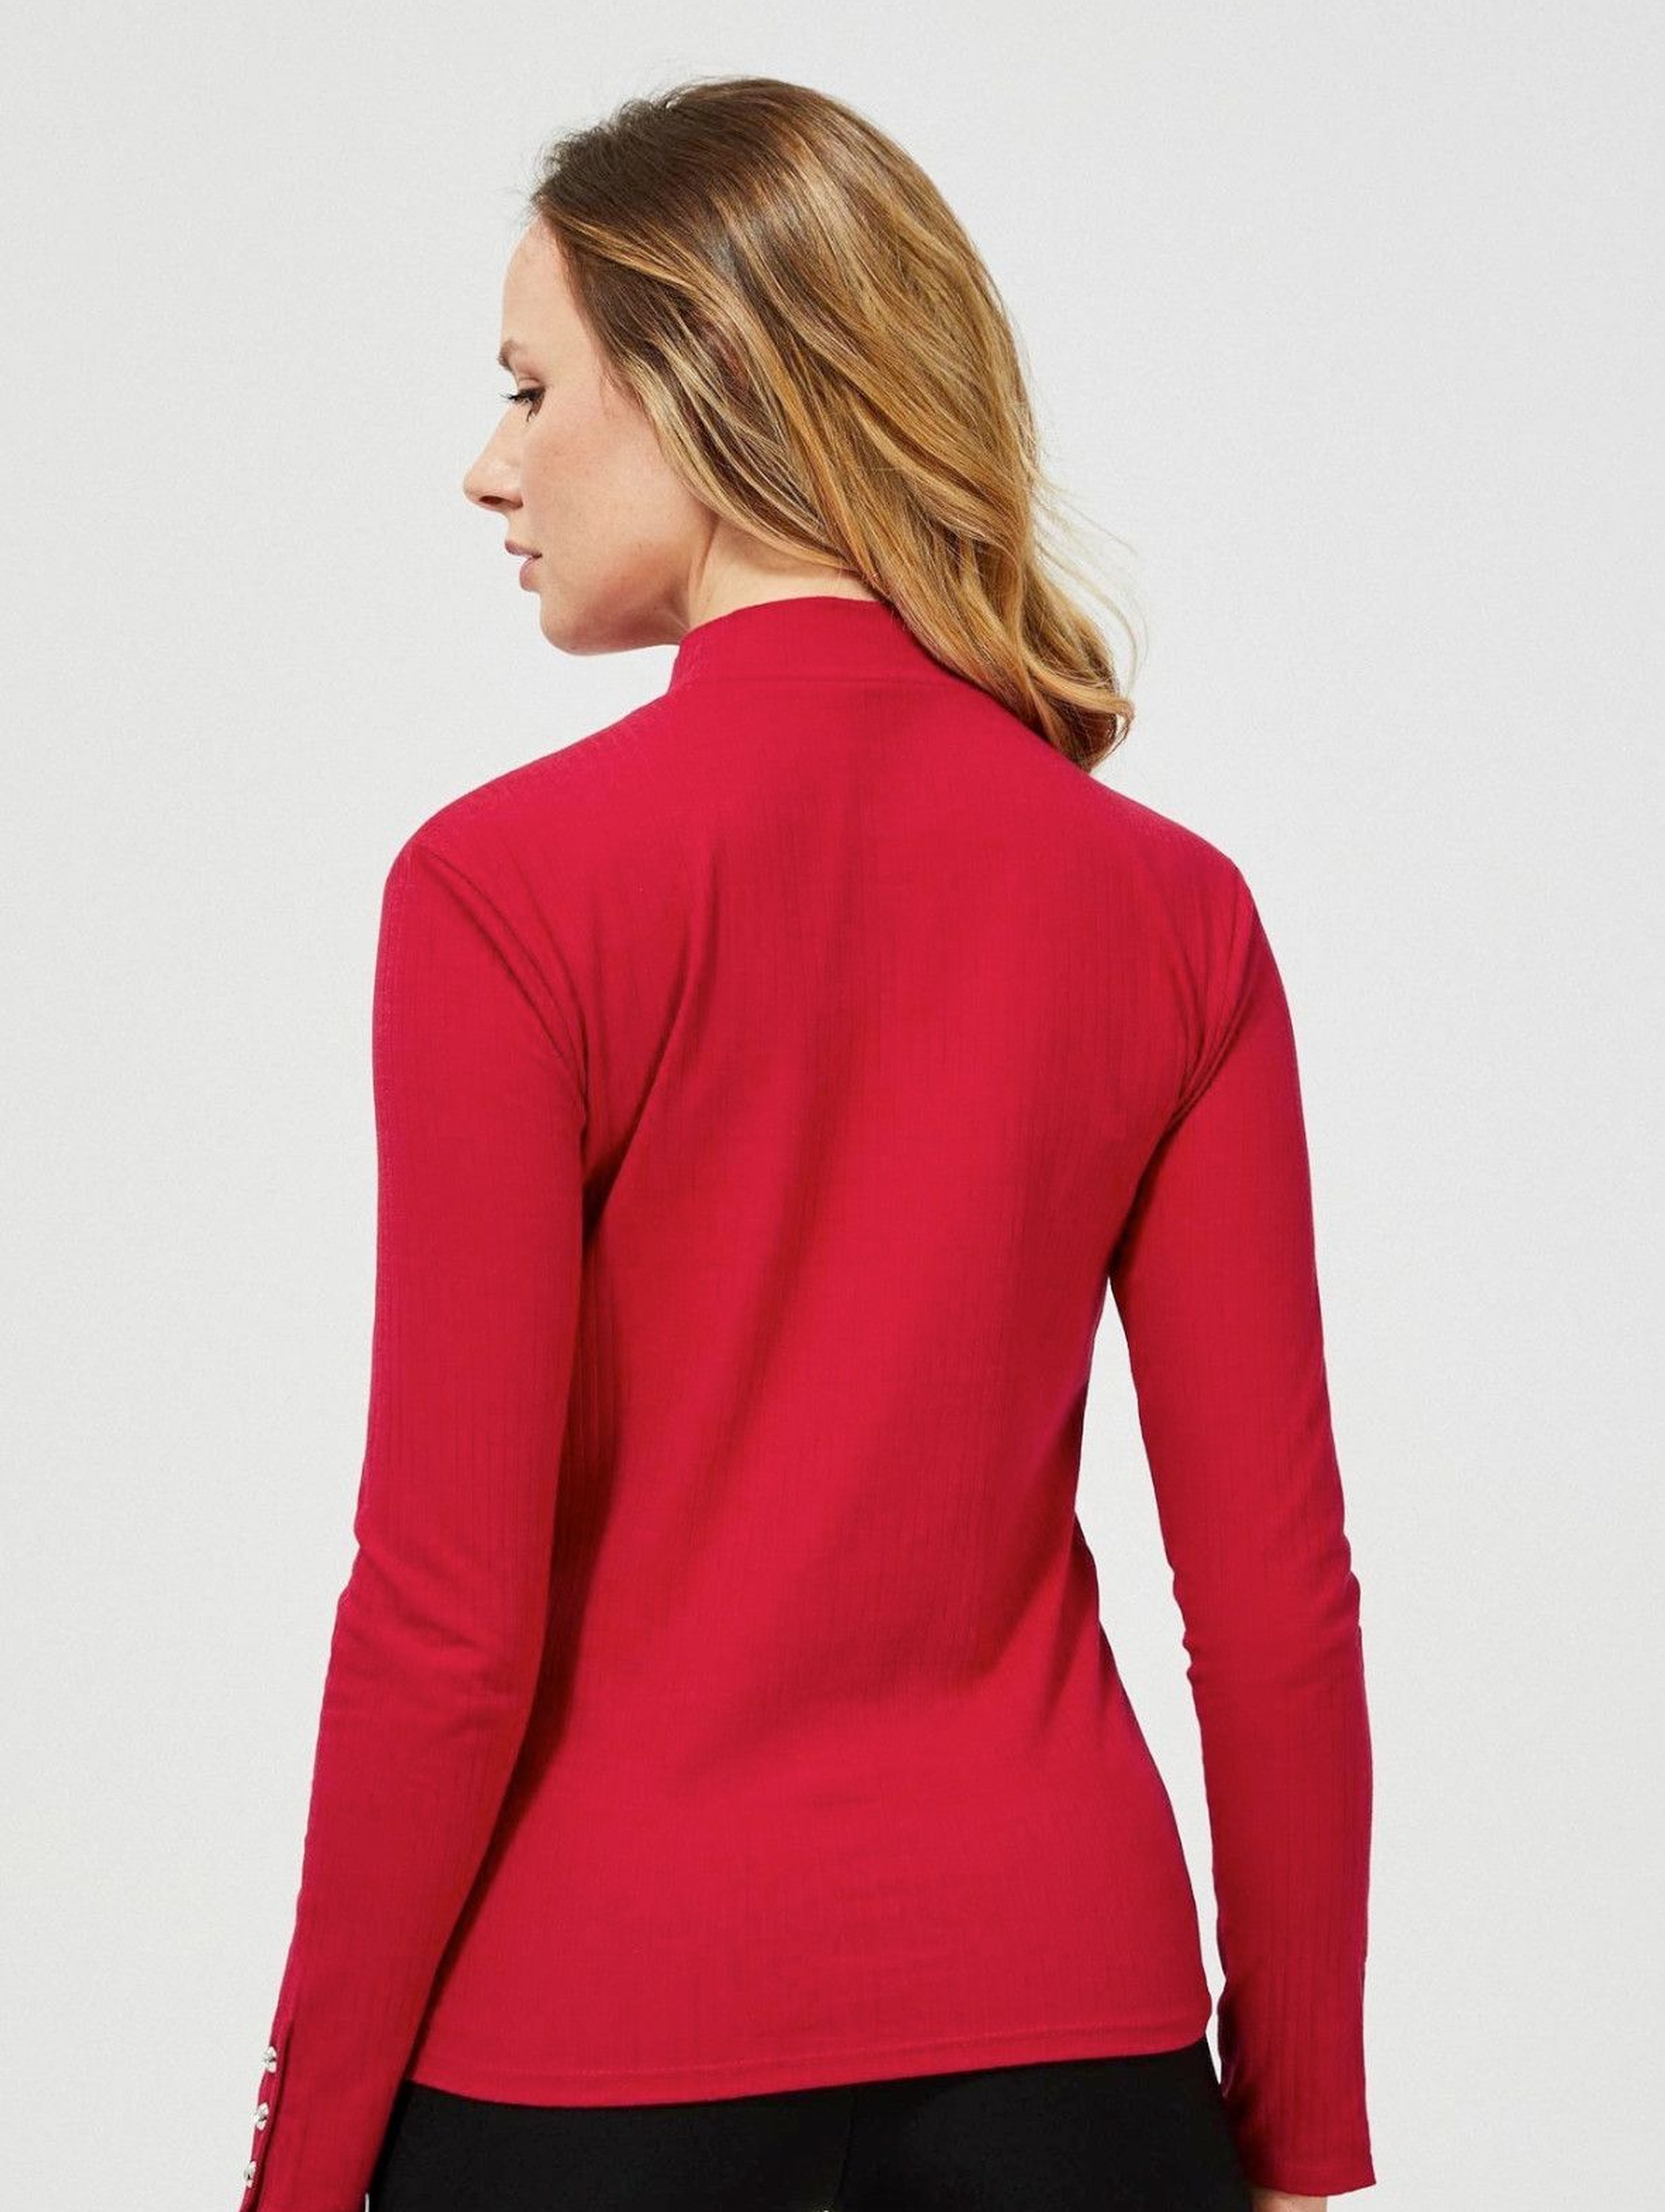 Elegancki półgolf damski w kolorze czerwonym z ozdobnymi guzikami na rękawach